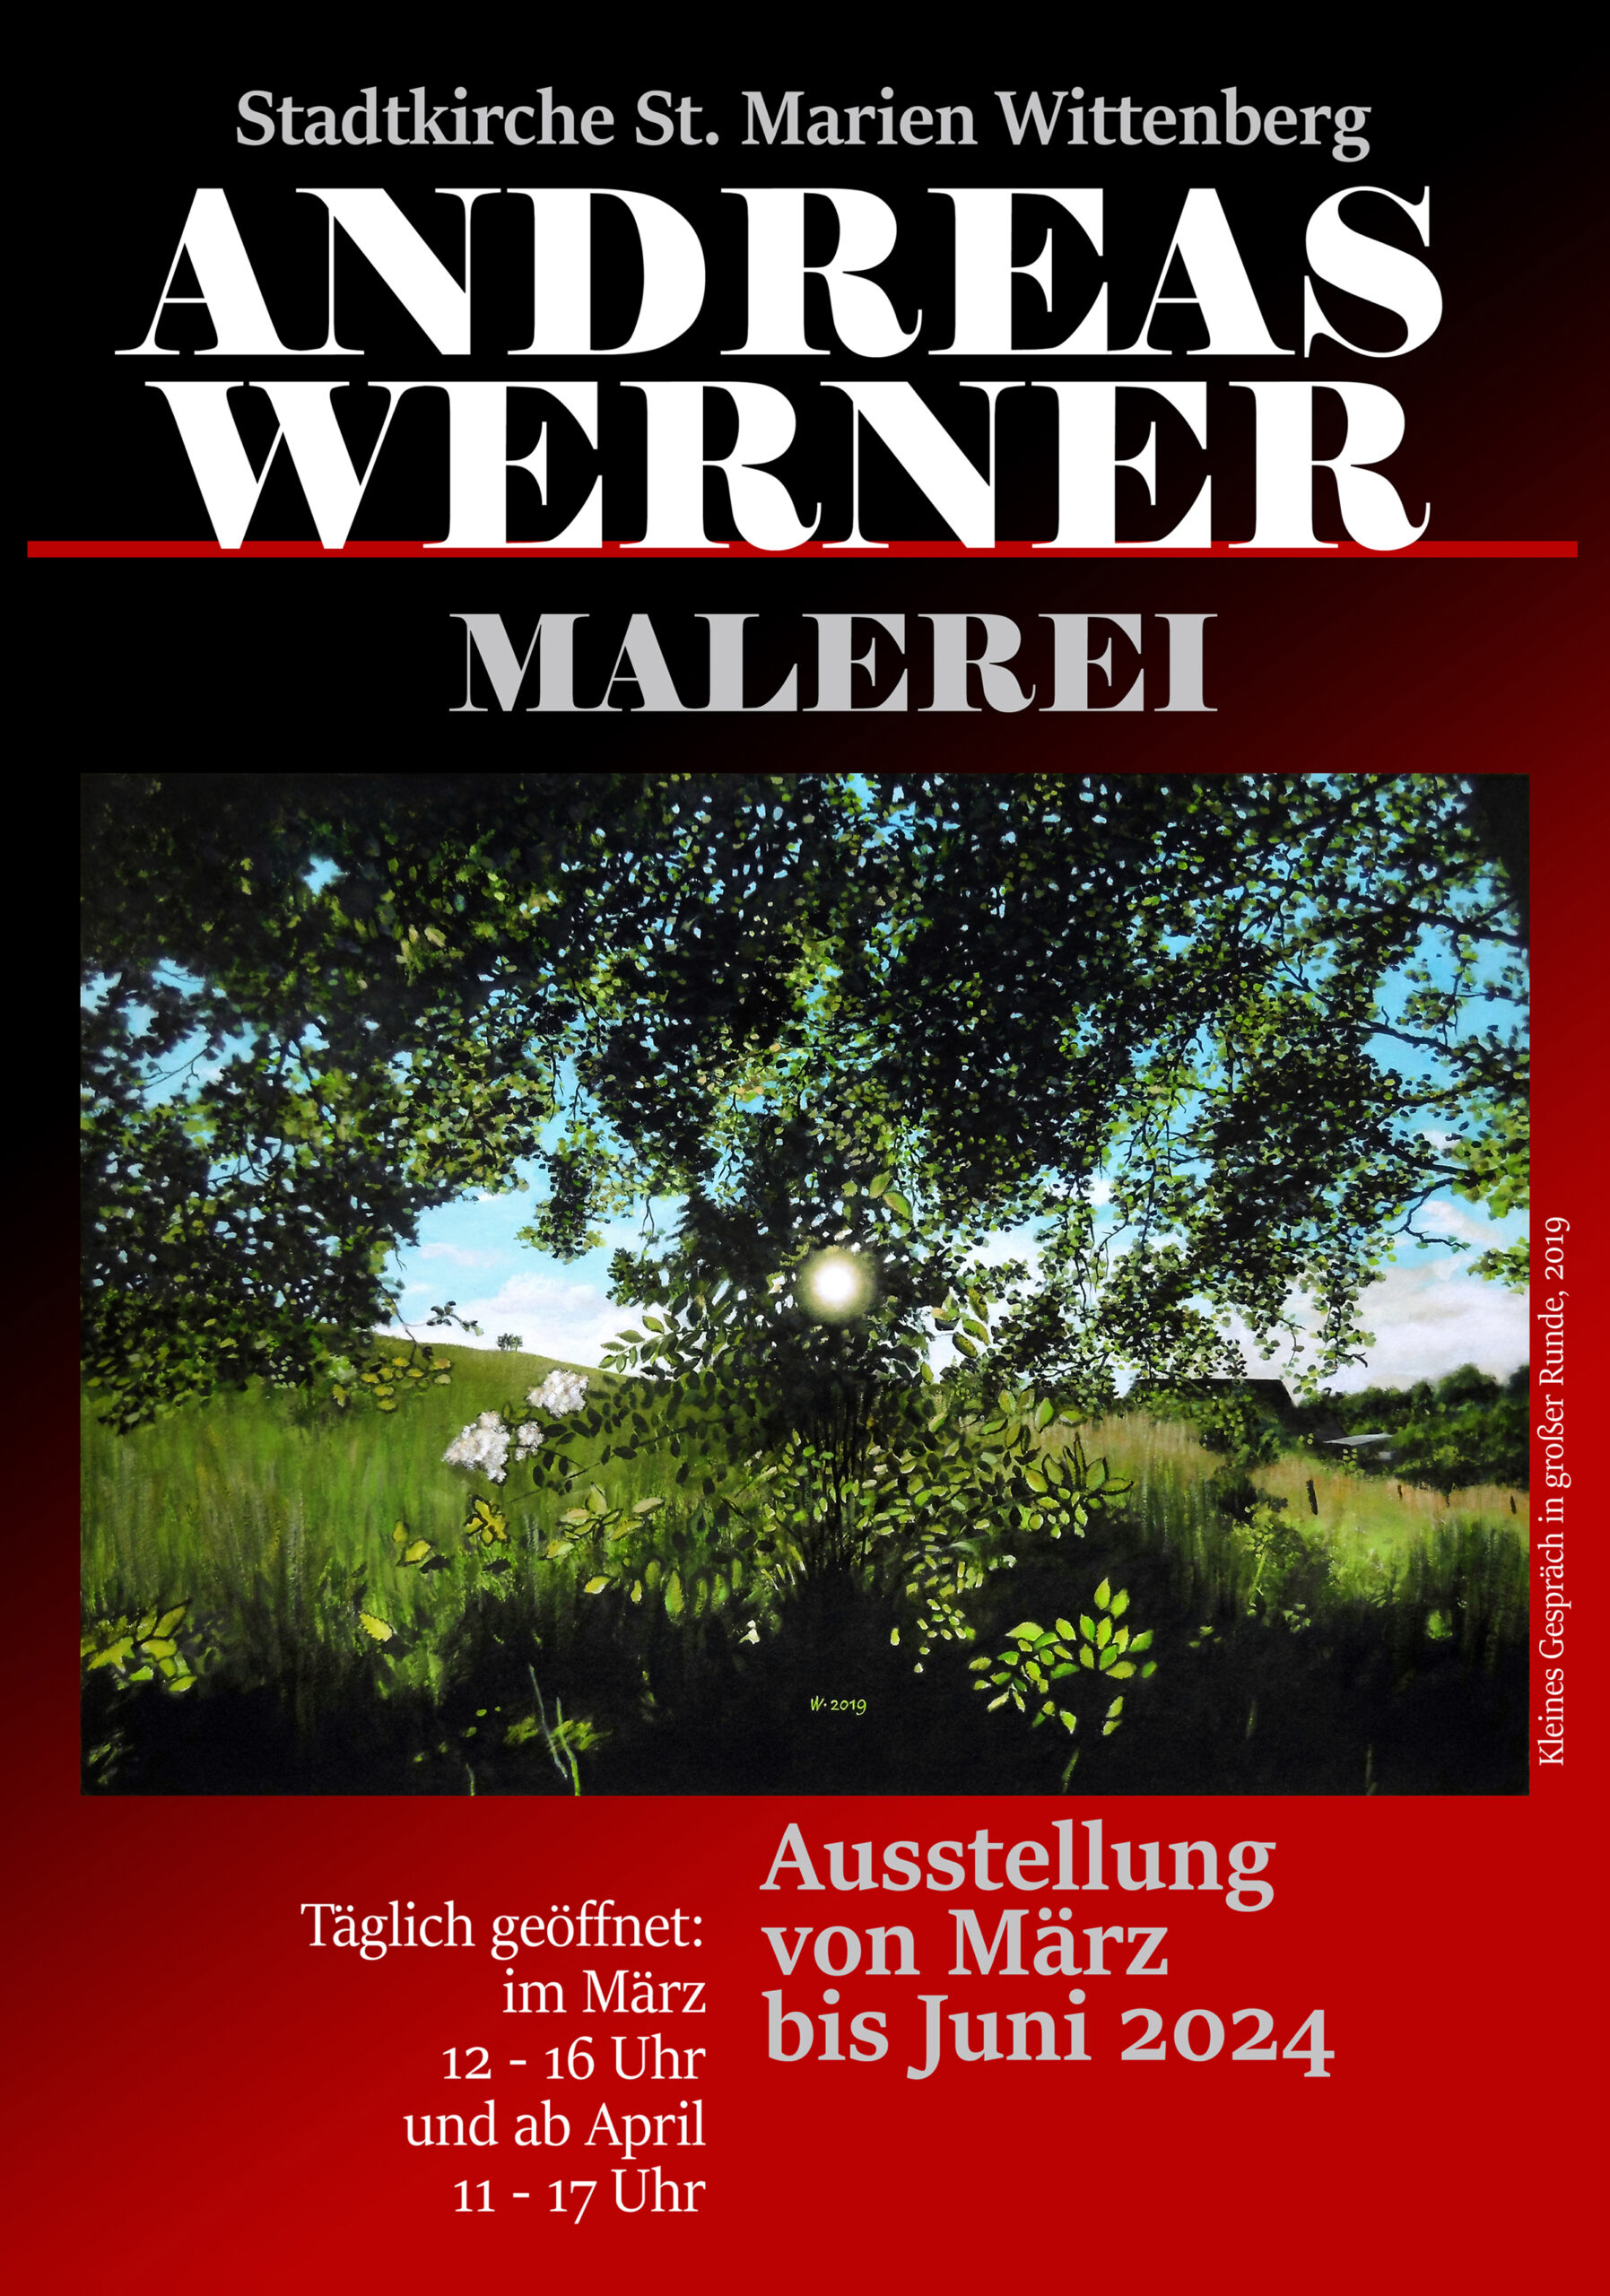 Ausstellung mit Gemälden von Andreas Werner in der Stadtkirche St. Marien Wittenberg